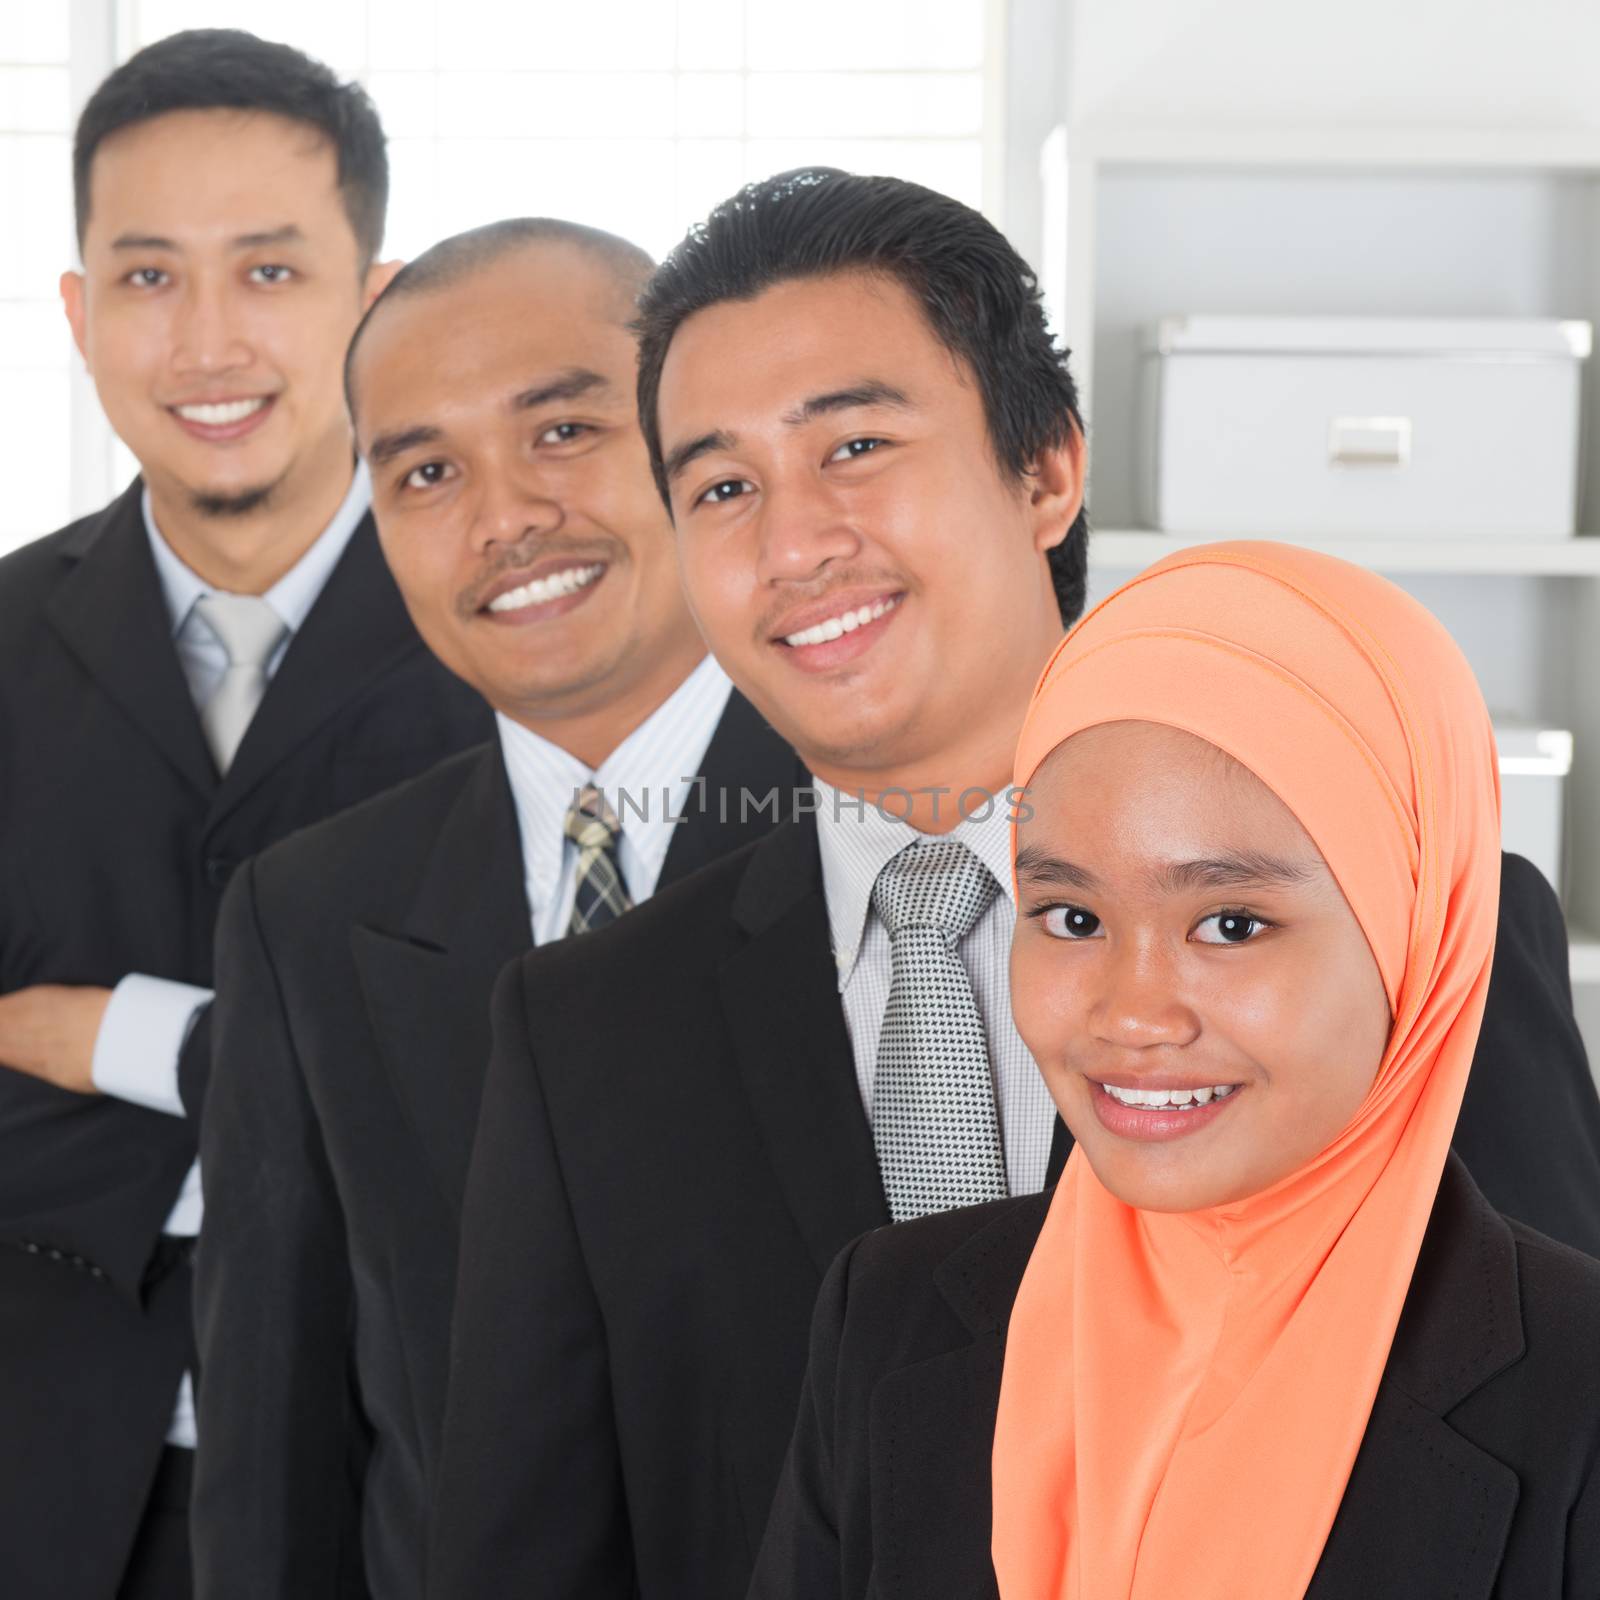 Malaysian business team  by szefei